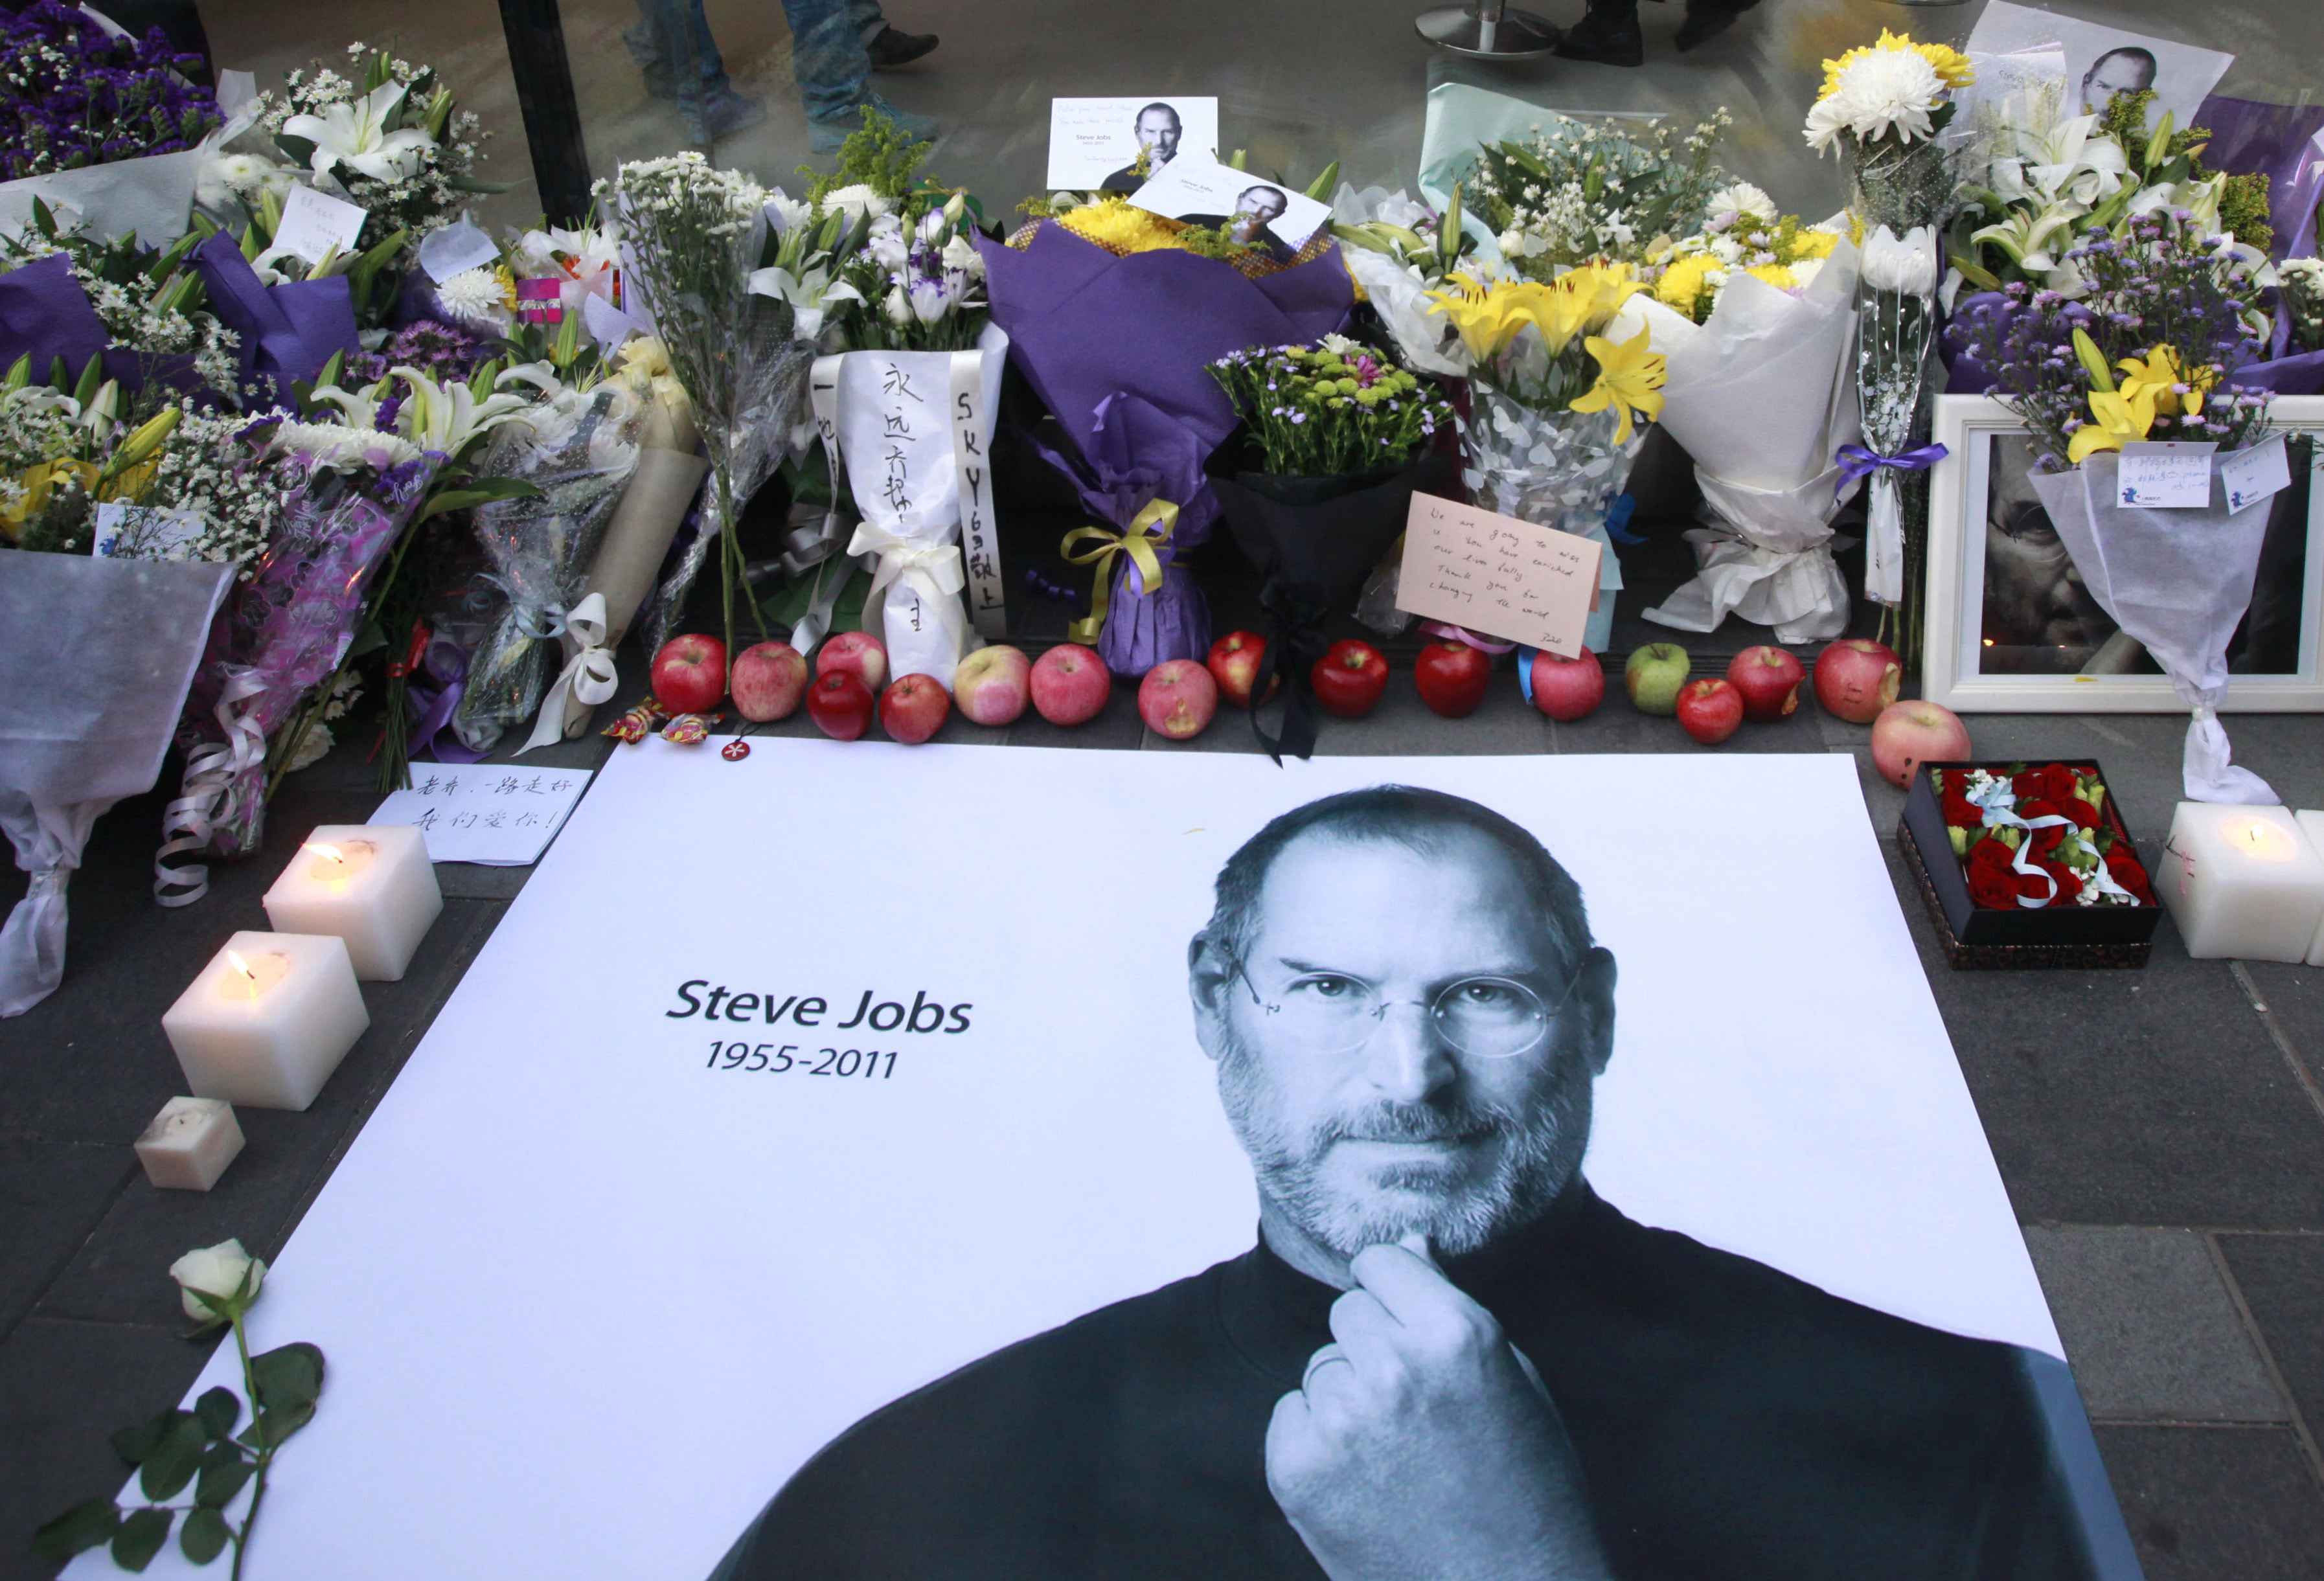 Steve Jobs, Iphone, Cancer, Apple